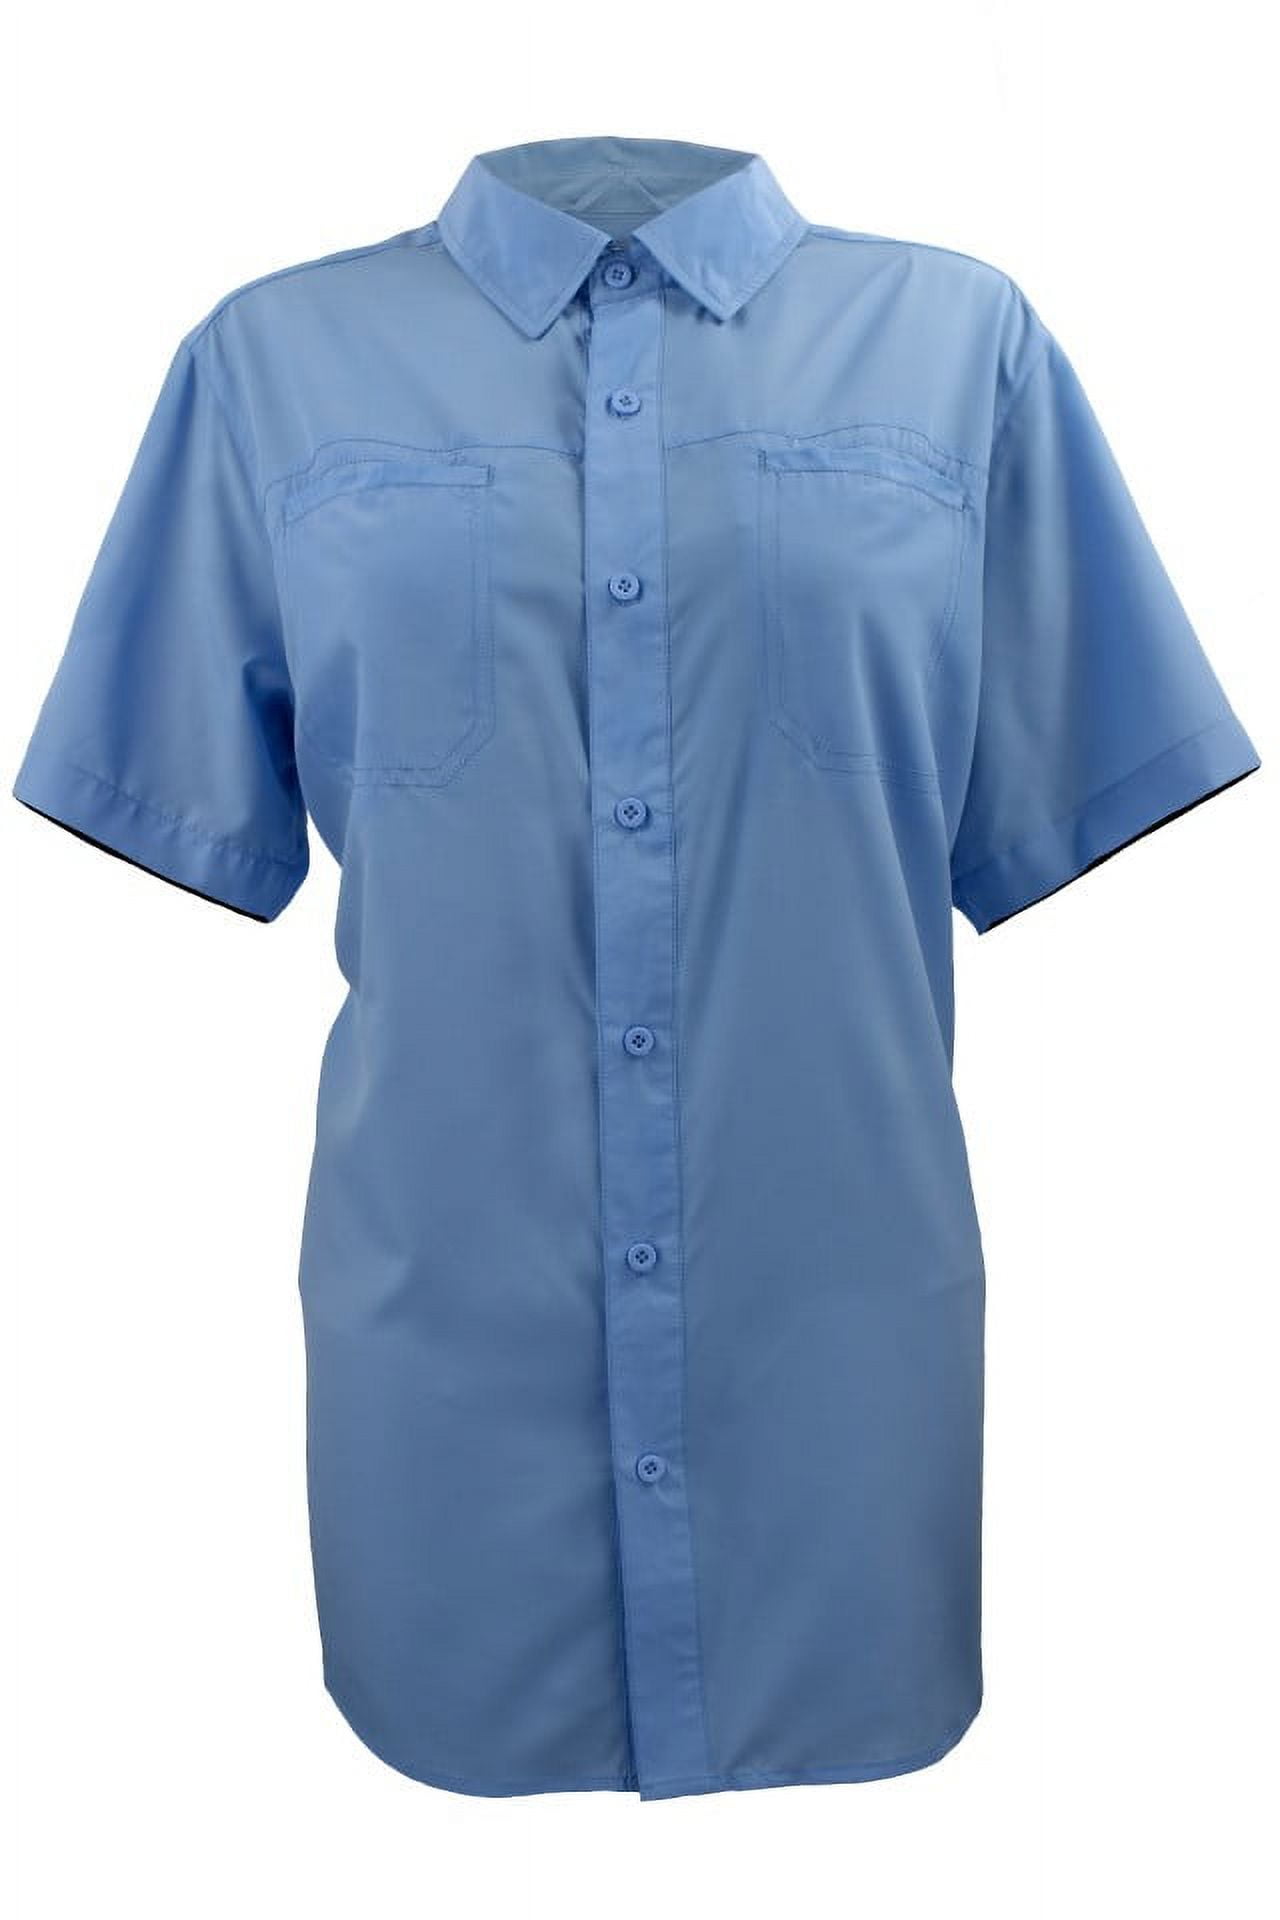 FinTech Women's Short Sleeve Fishing Shirt - Medium - Walmart.com